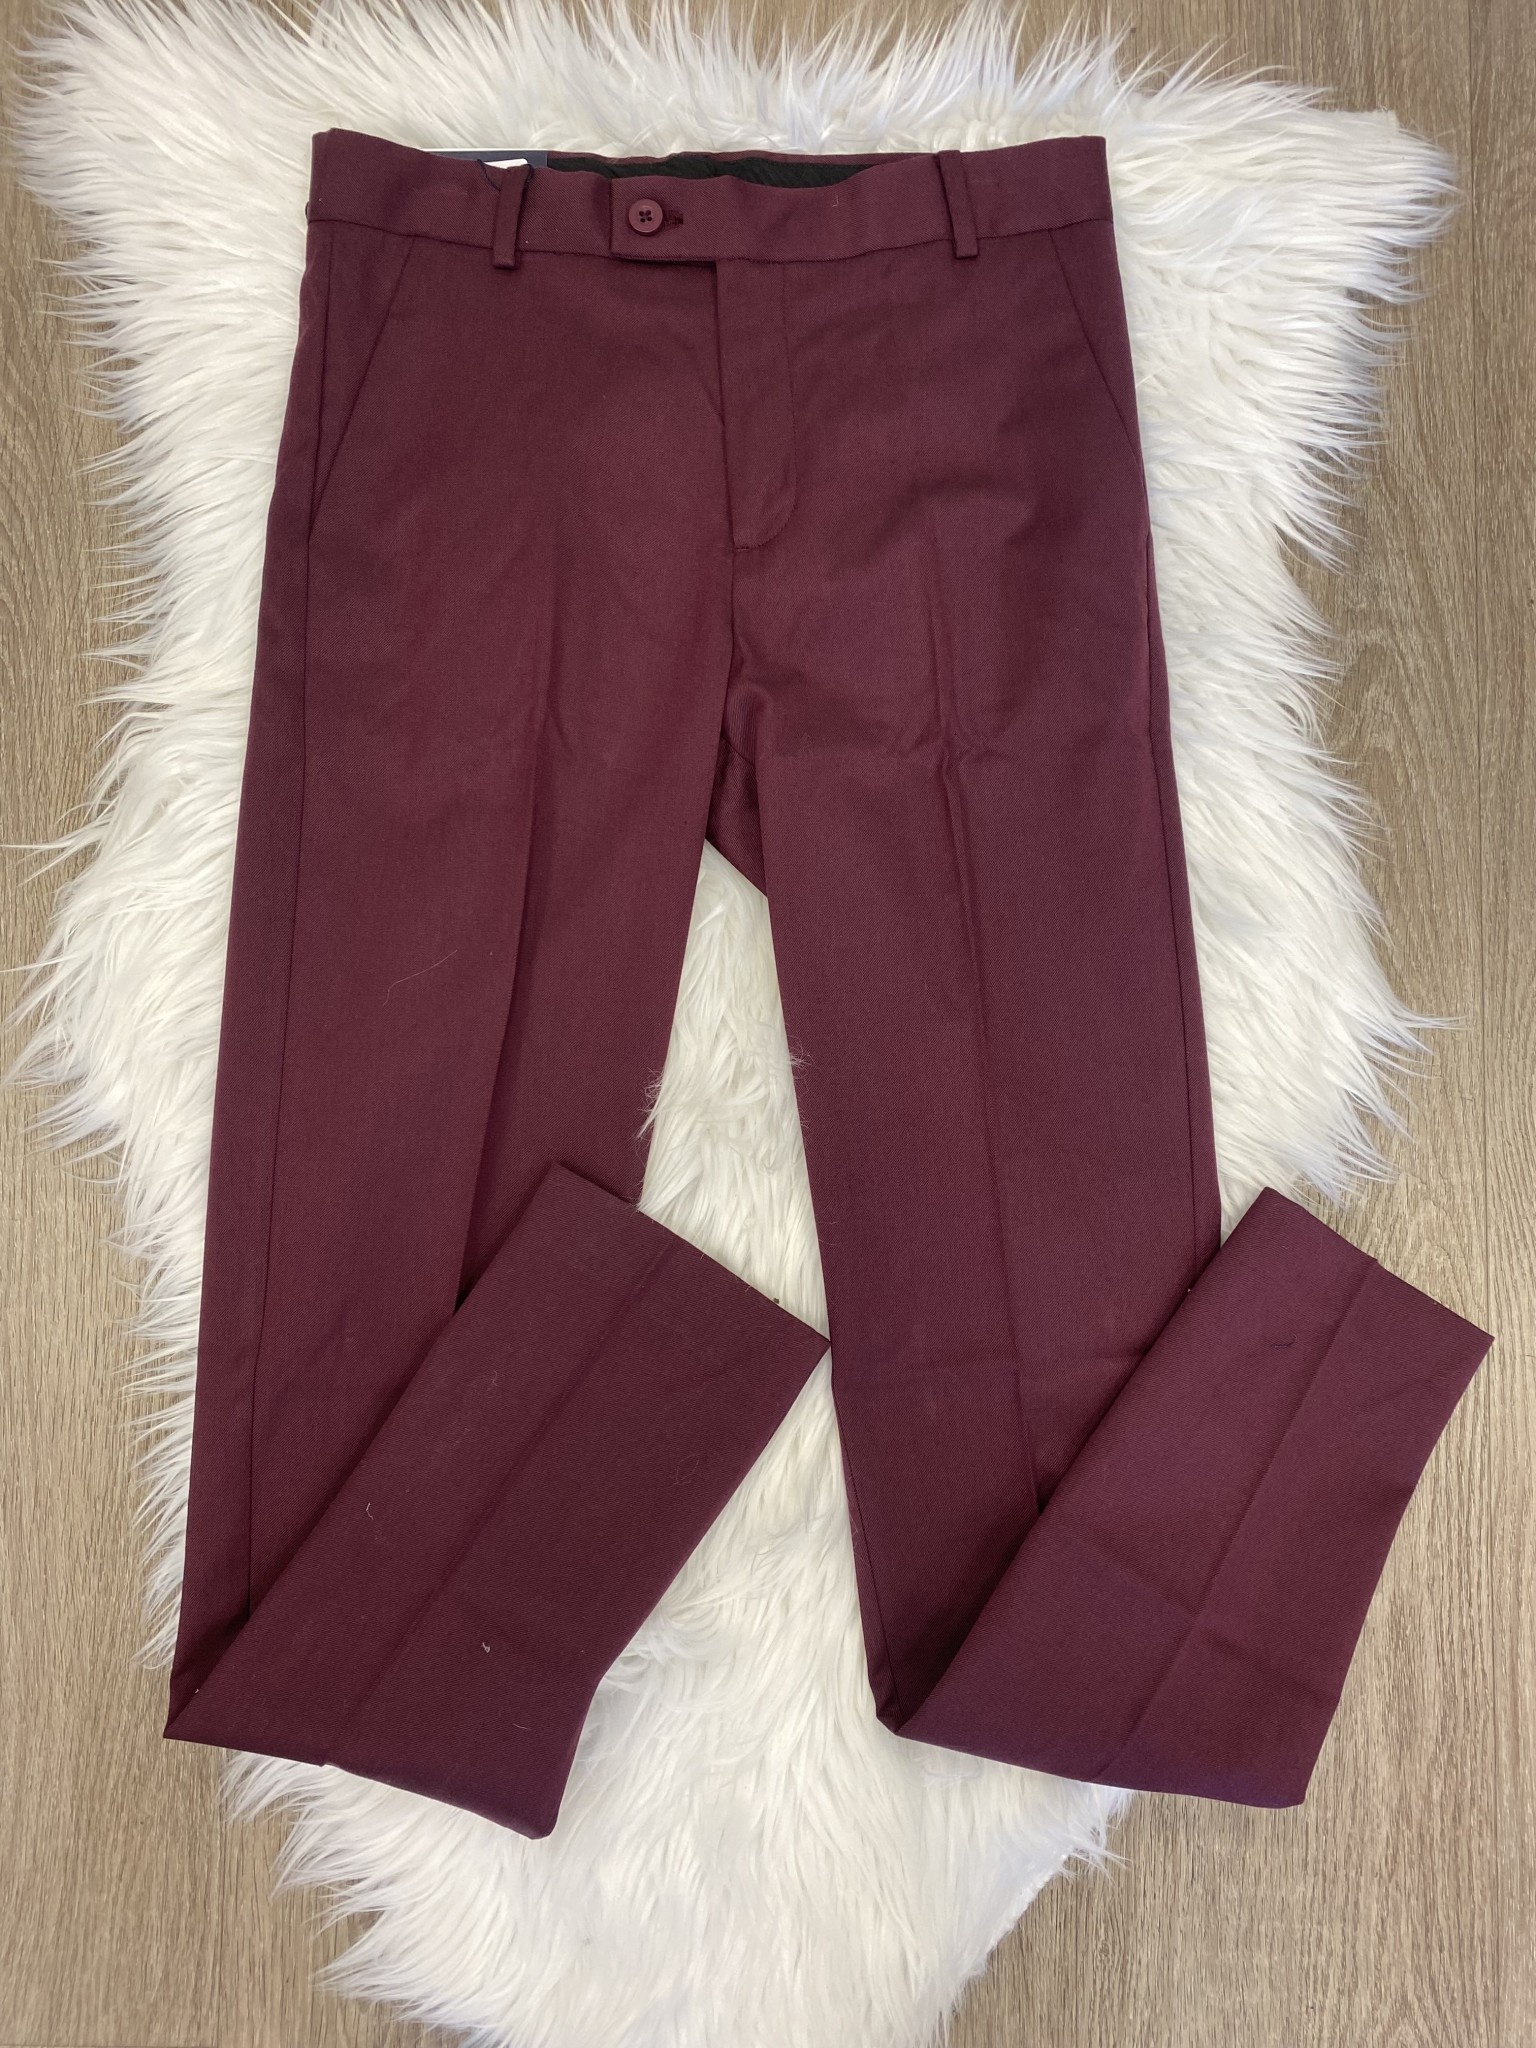 LZ 508 Slim Fit Dress Pants {Burgundy} - Ethan's Closet Children's